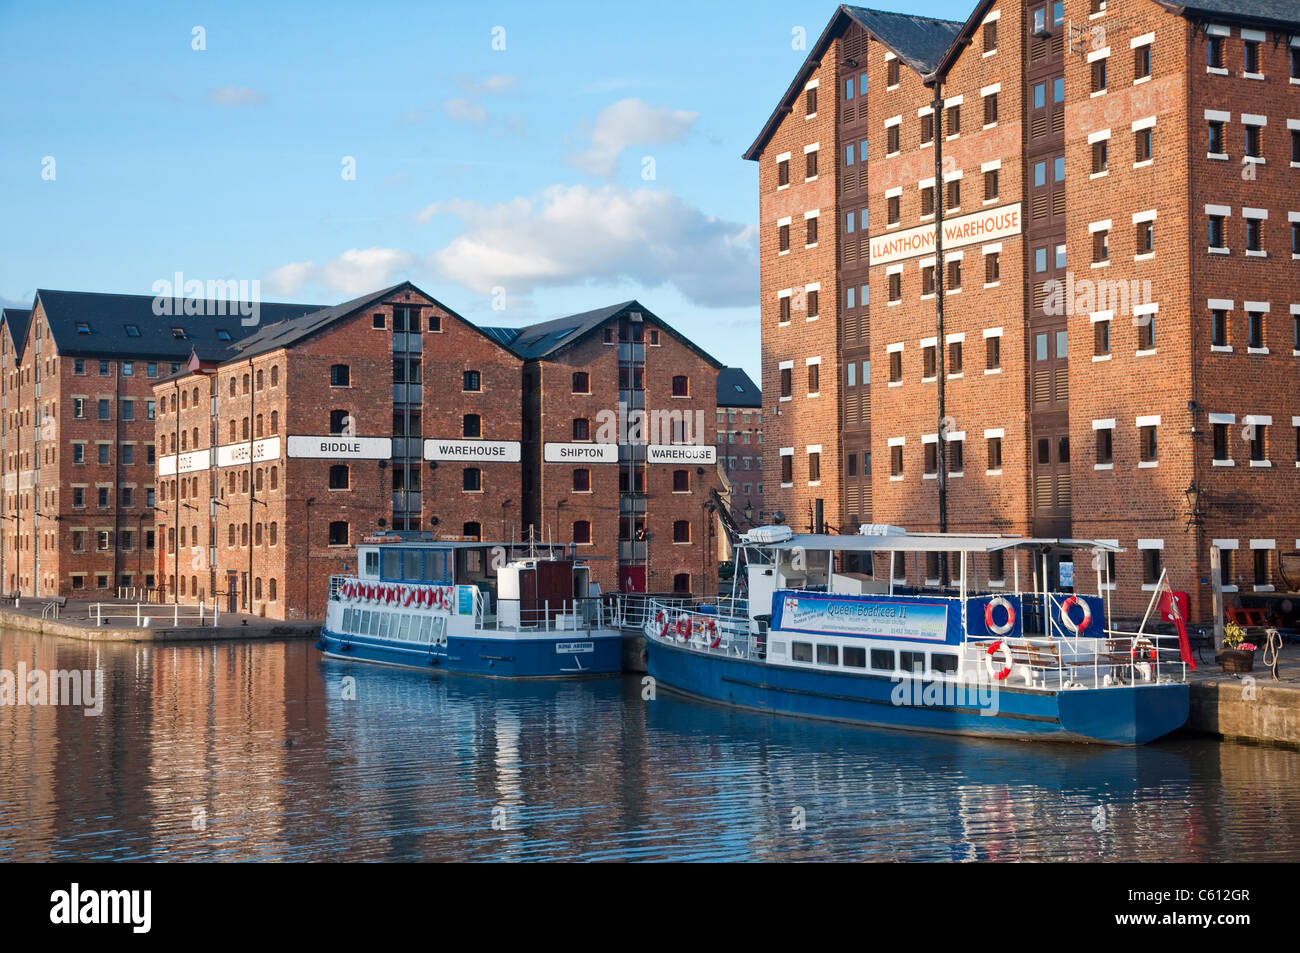 Gloucester Docks - anciens entrepôts rénovés et transformés pour de nouveaux usages - Gloucestershire, Royaume-Uni. Banque D'Images